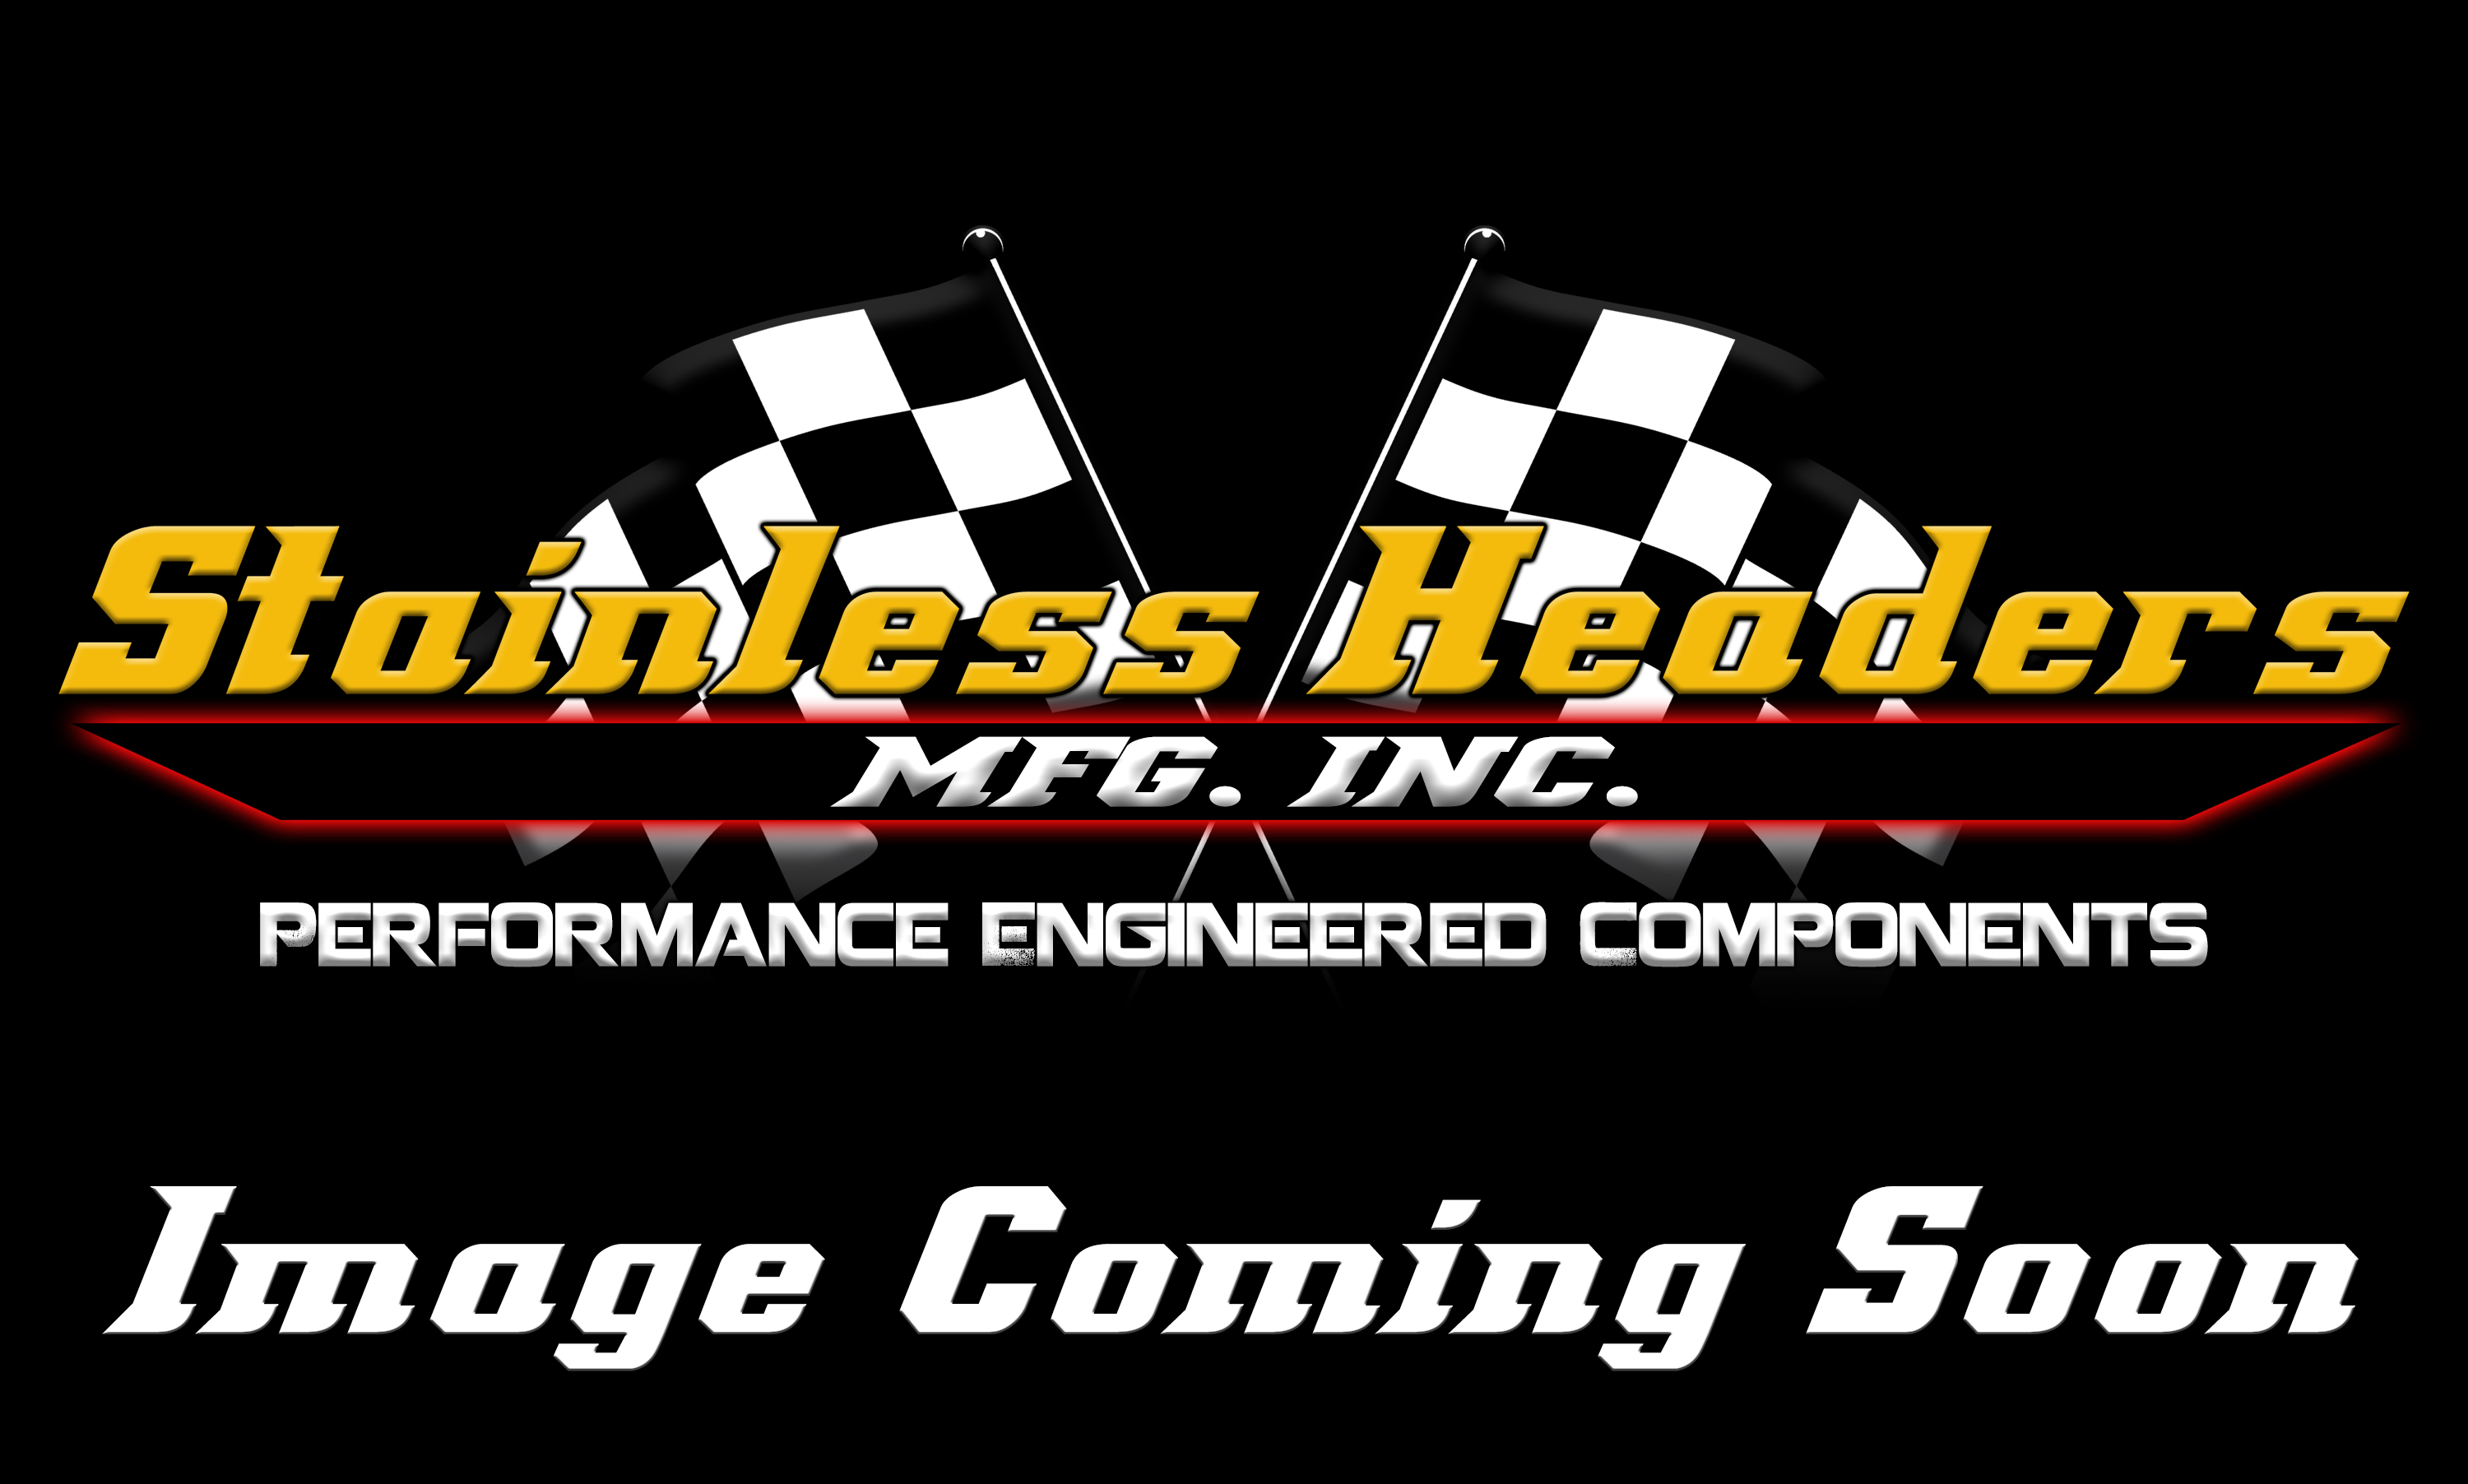 Stainless Headers - Chevrolet LS7/LSX Custom Turbo Header Build Kit - Image 4